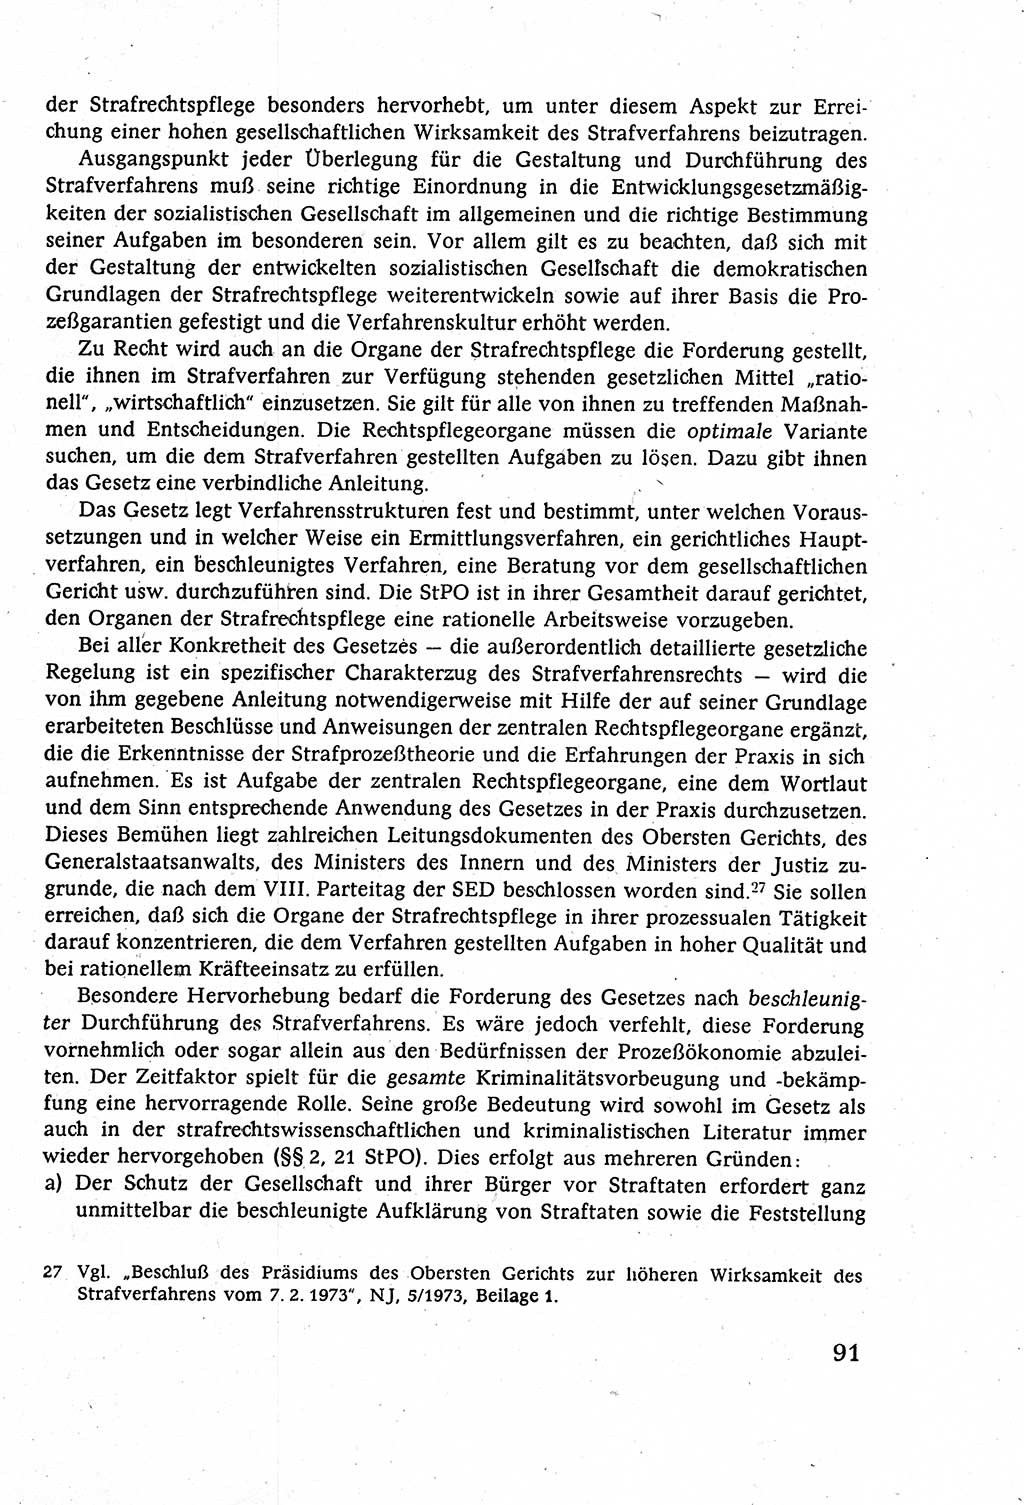 Strafverfahrensrecht [Deutsche Demokratische Republik (DDR)], Lehrbuch 1977, Seite 91 (Strafverf.-R. DDR Lb. 1977, S. 91)